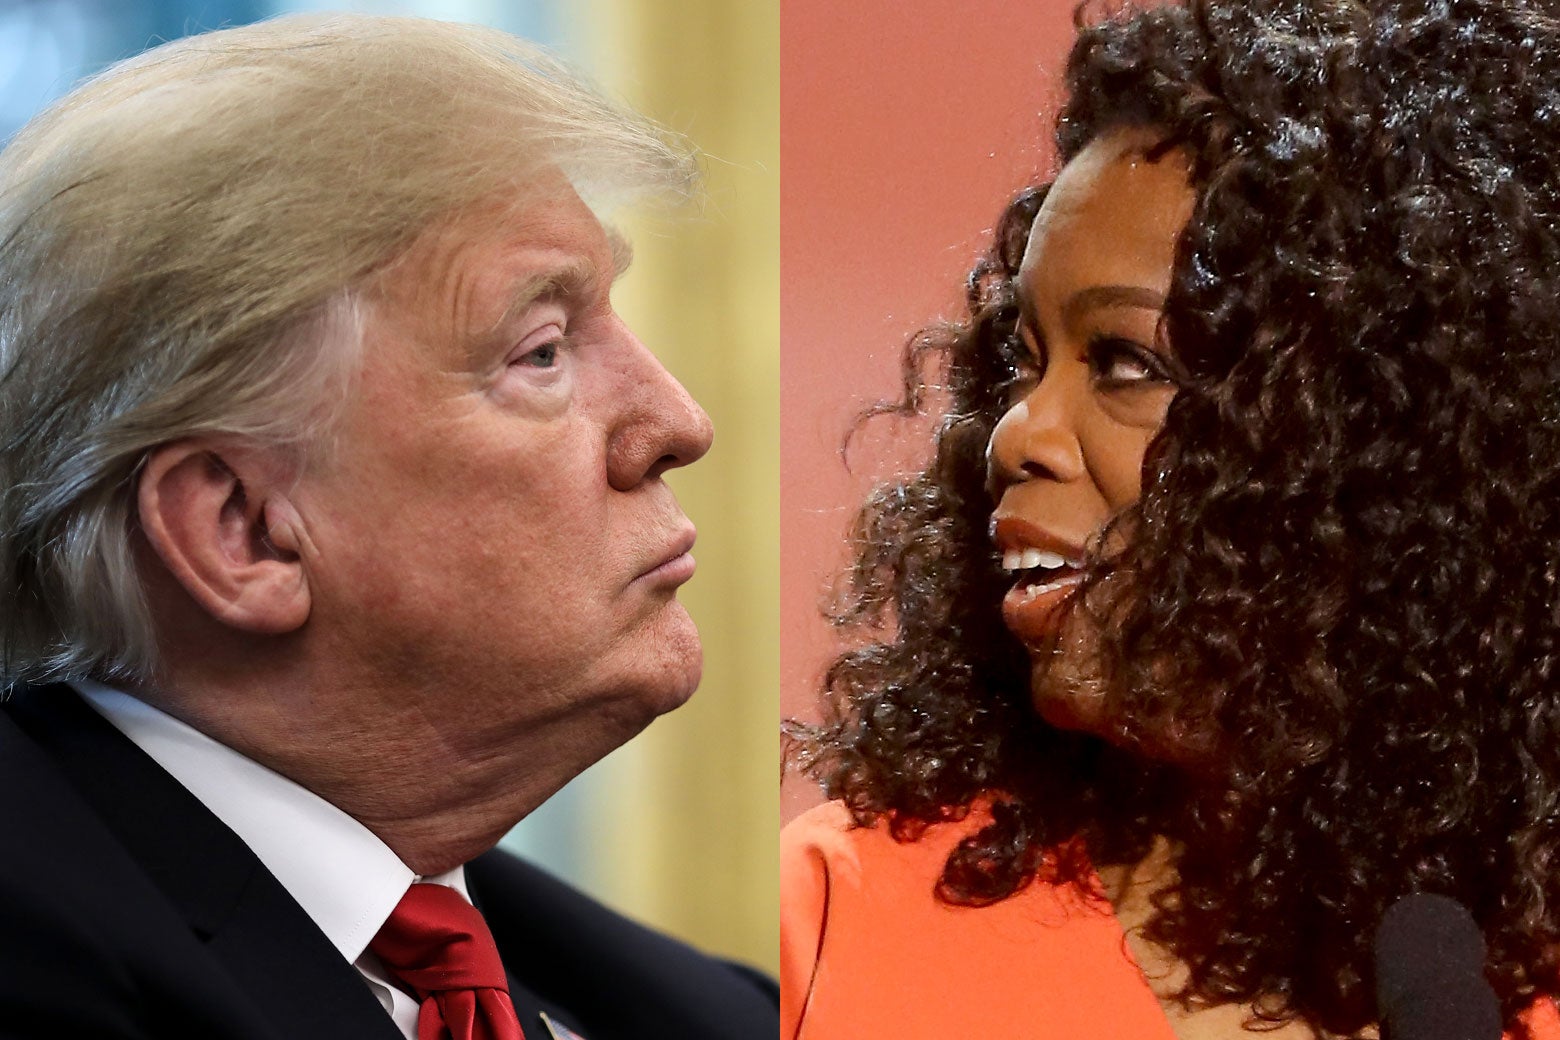 Trump and Oprah.